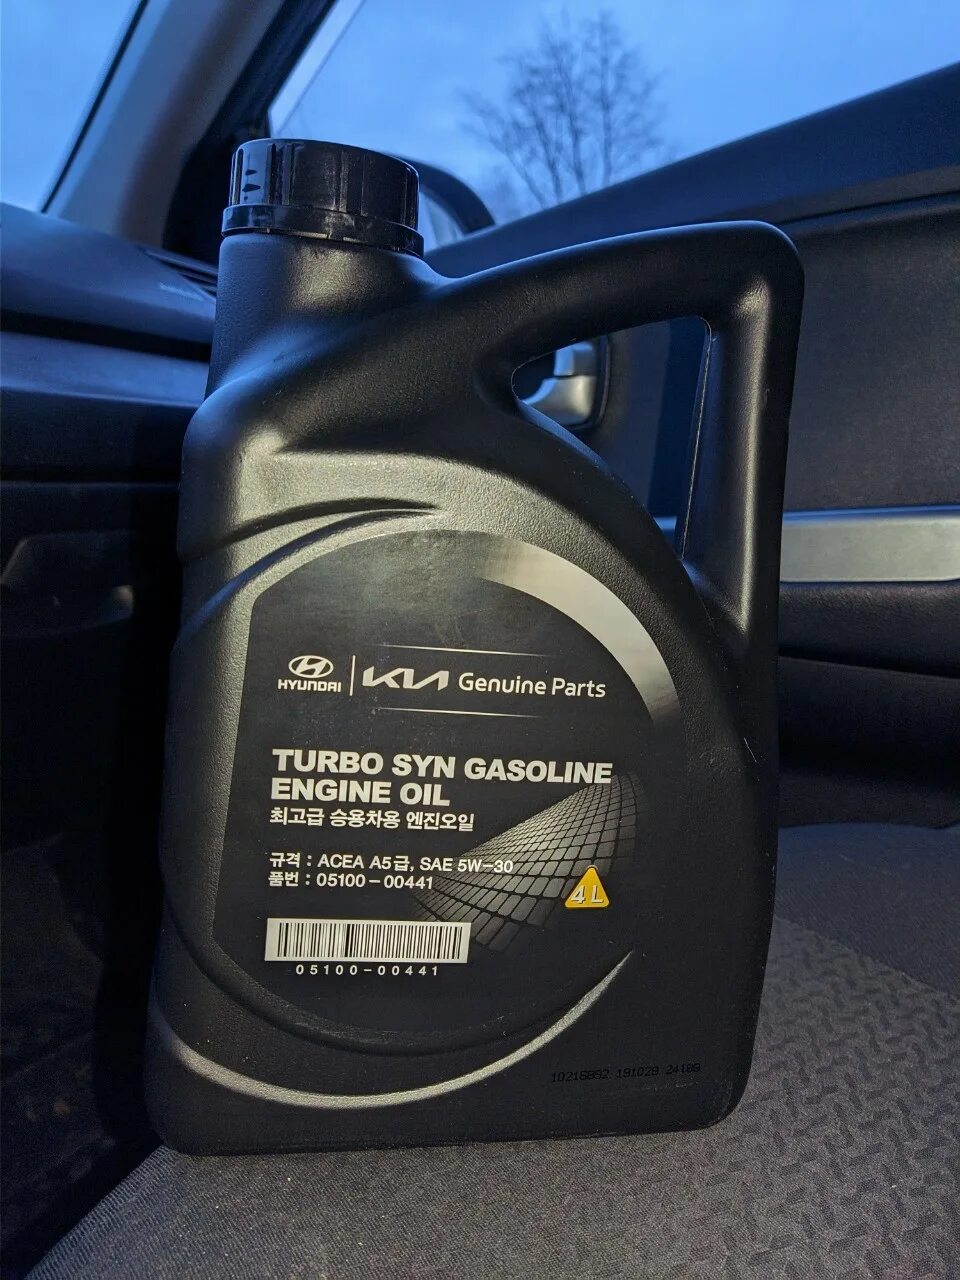 Моторное масло хендай турбо. Hyundai Turbo gasoline 5w-30. Hyundai Turbo syn gasoline 5w-30. Масло Hyundai 5w30 Turbo syn. Kia Turbo syn 5w30.